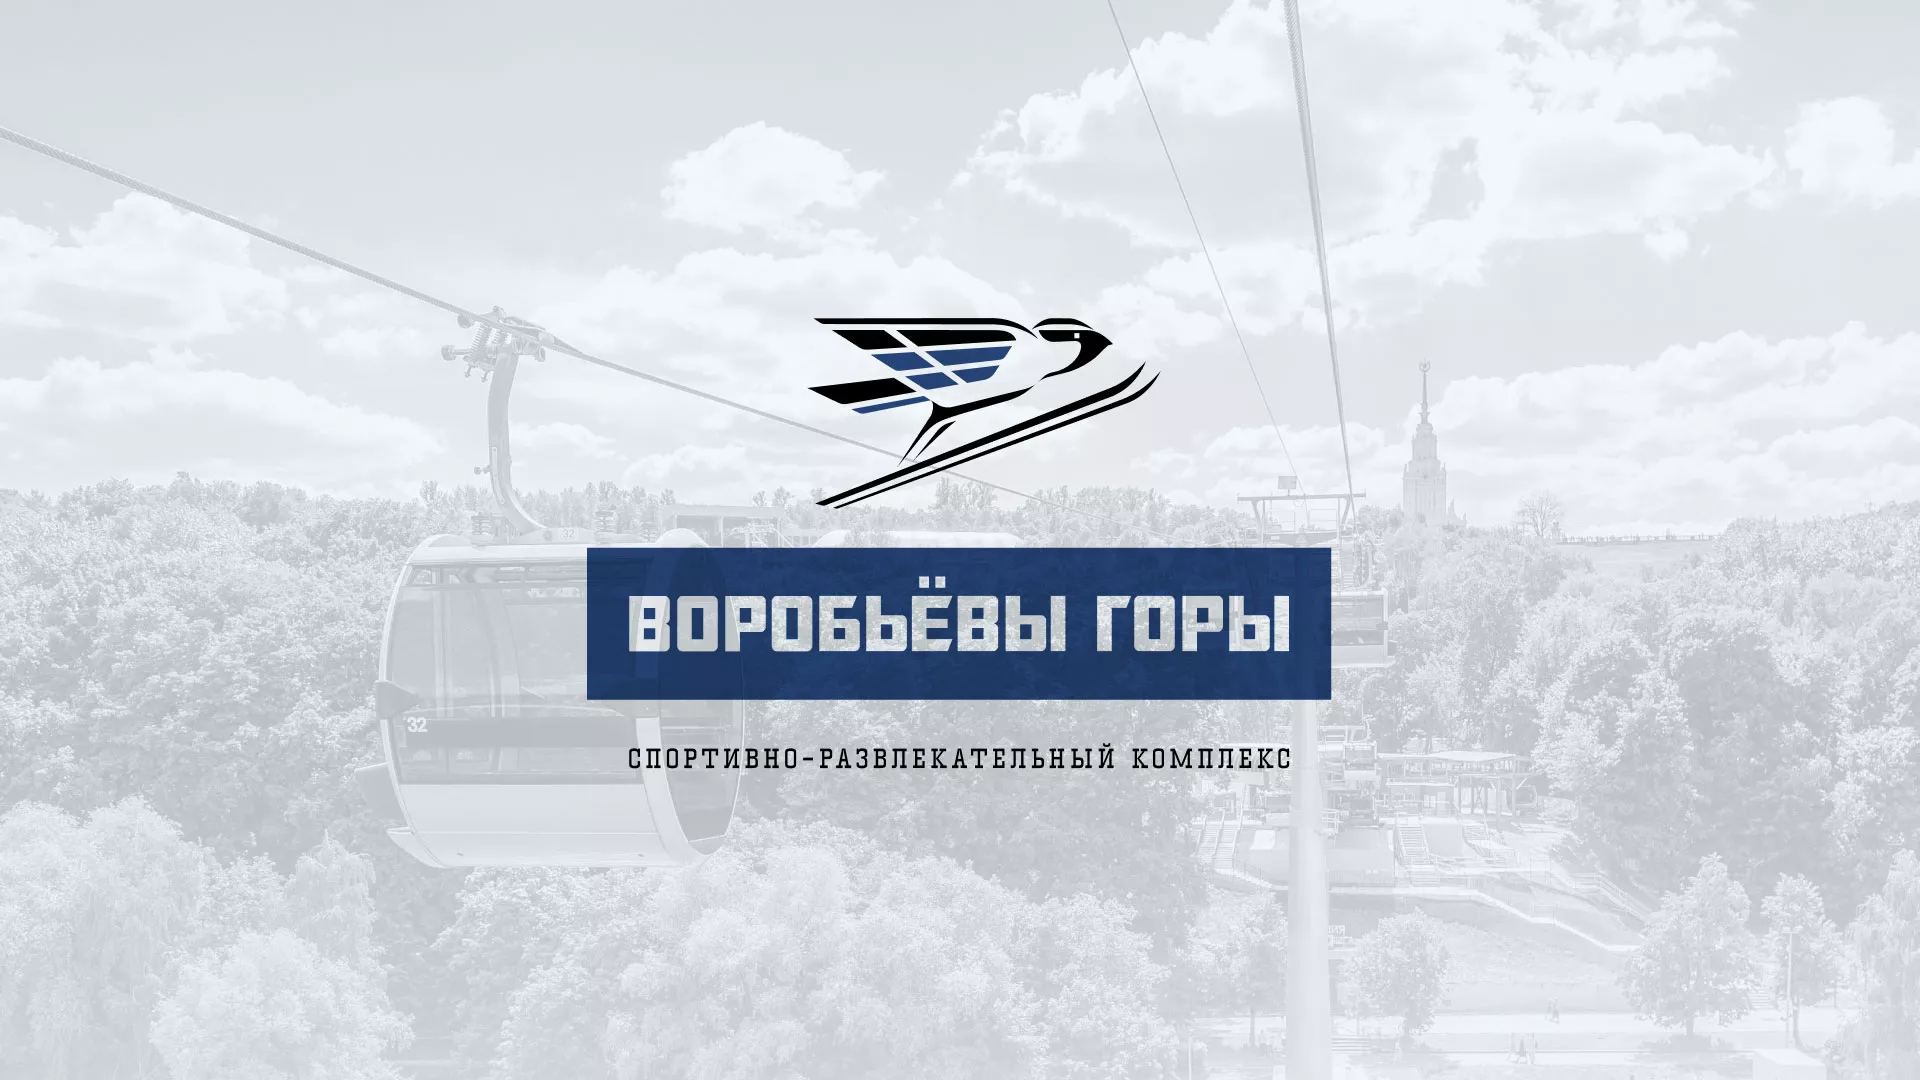 Разработка сайта в Кстово для спортивно-развлекательного комплекса «Воробьёвы горы»